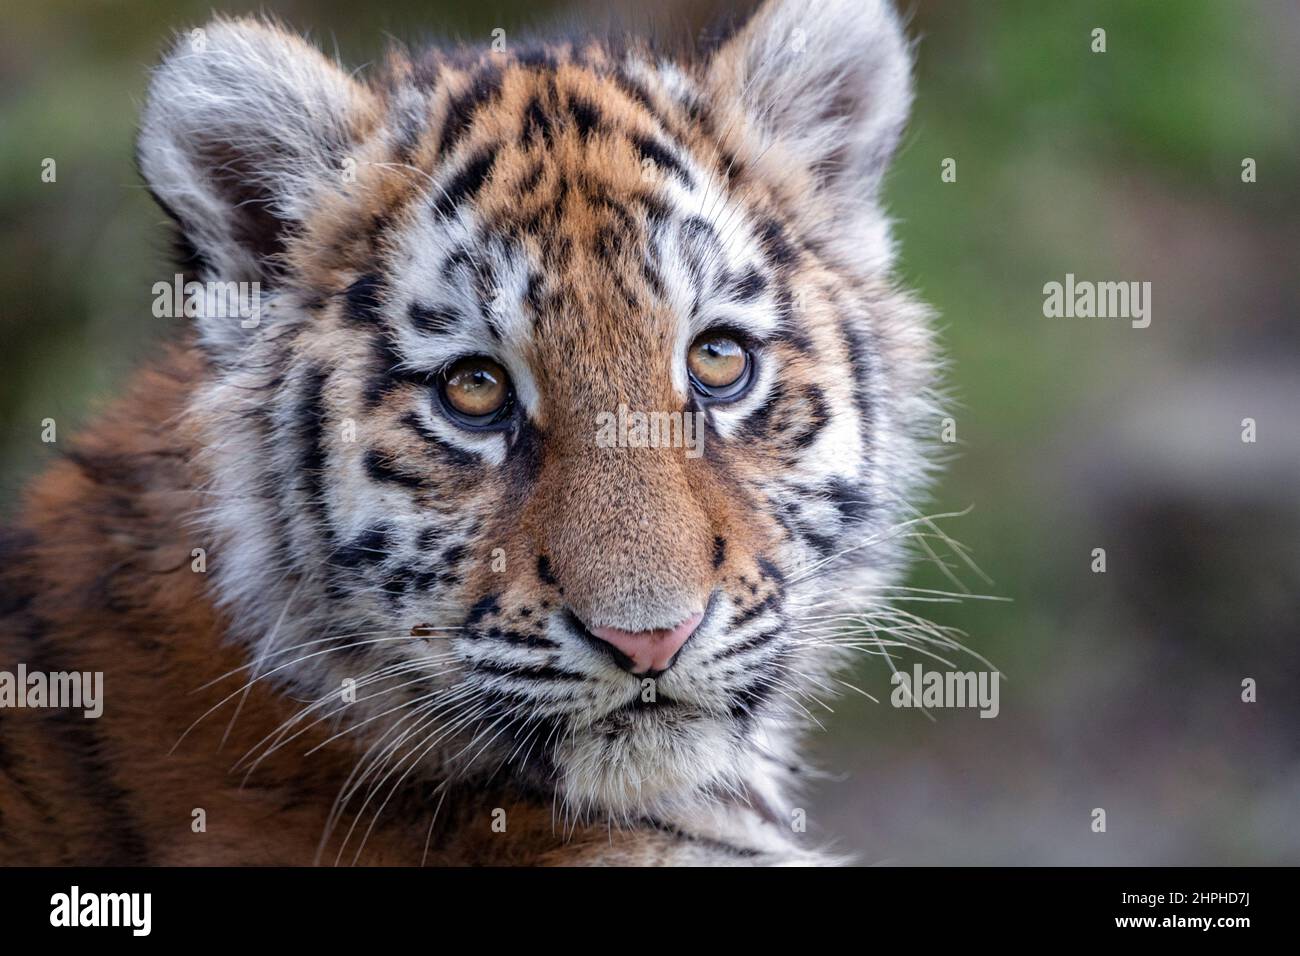 Amur (Siberian) tiger cub looking up Stock Photo